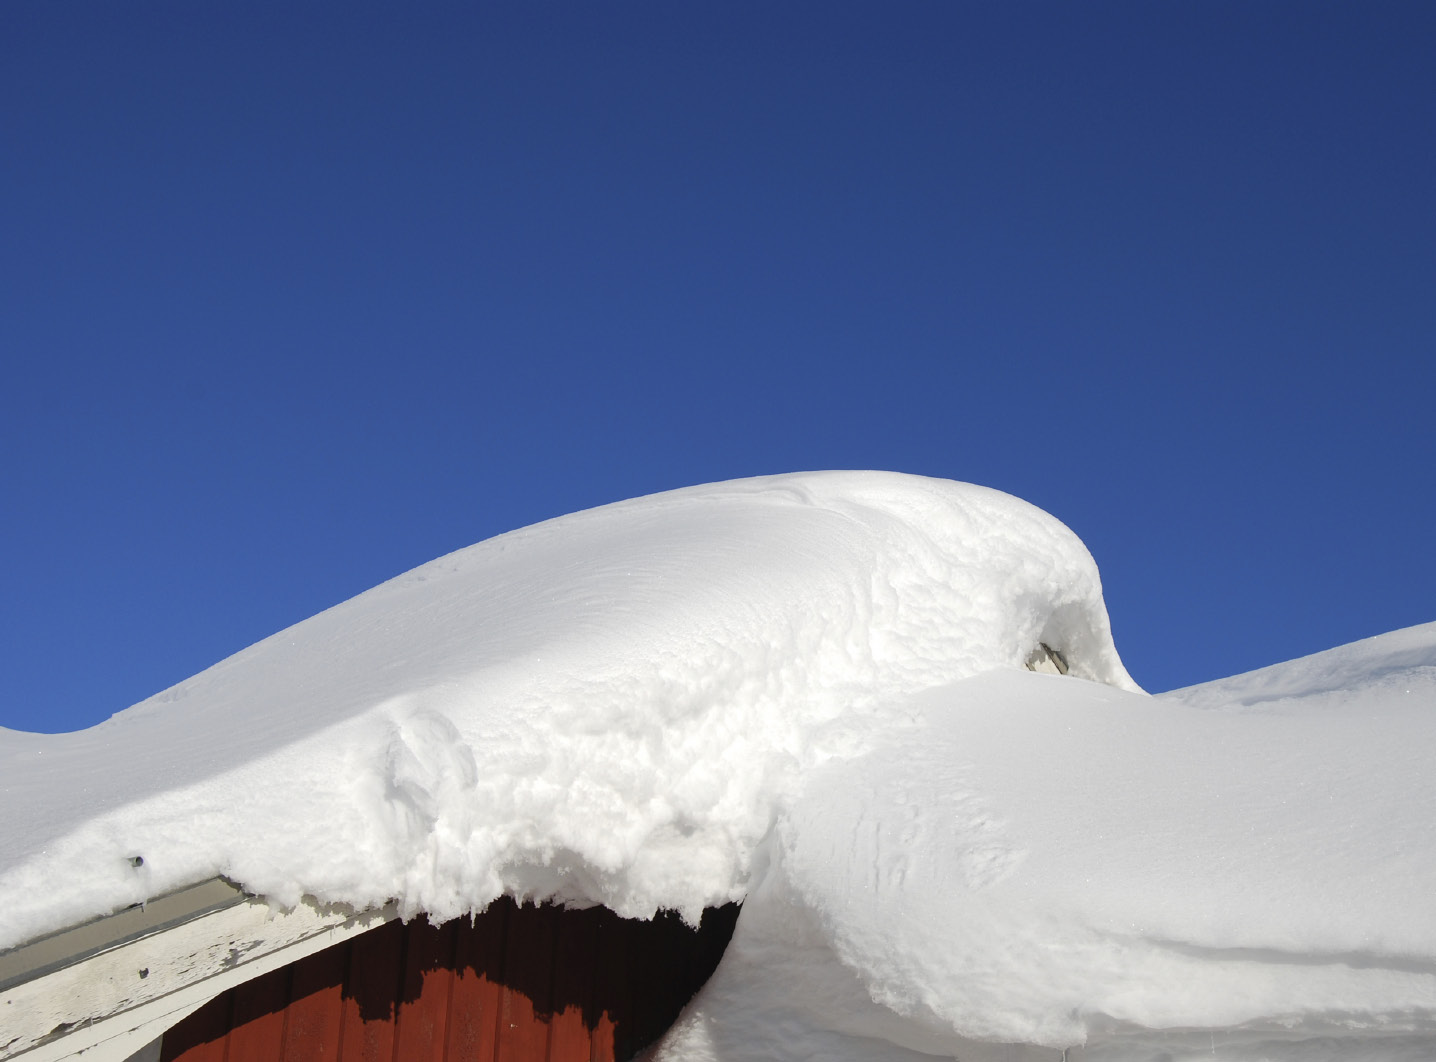 December Stort eget ansvar för att undvika att taket rasar in i vinter Förra vinterns snömängder orsakade tusentals takras på ladugårdar och ekonomibyggnader.